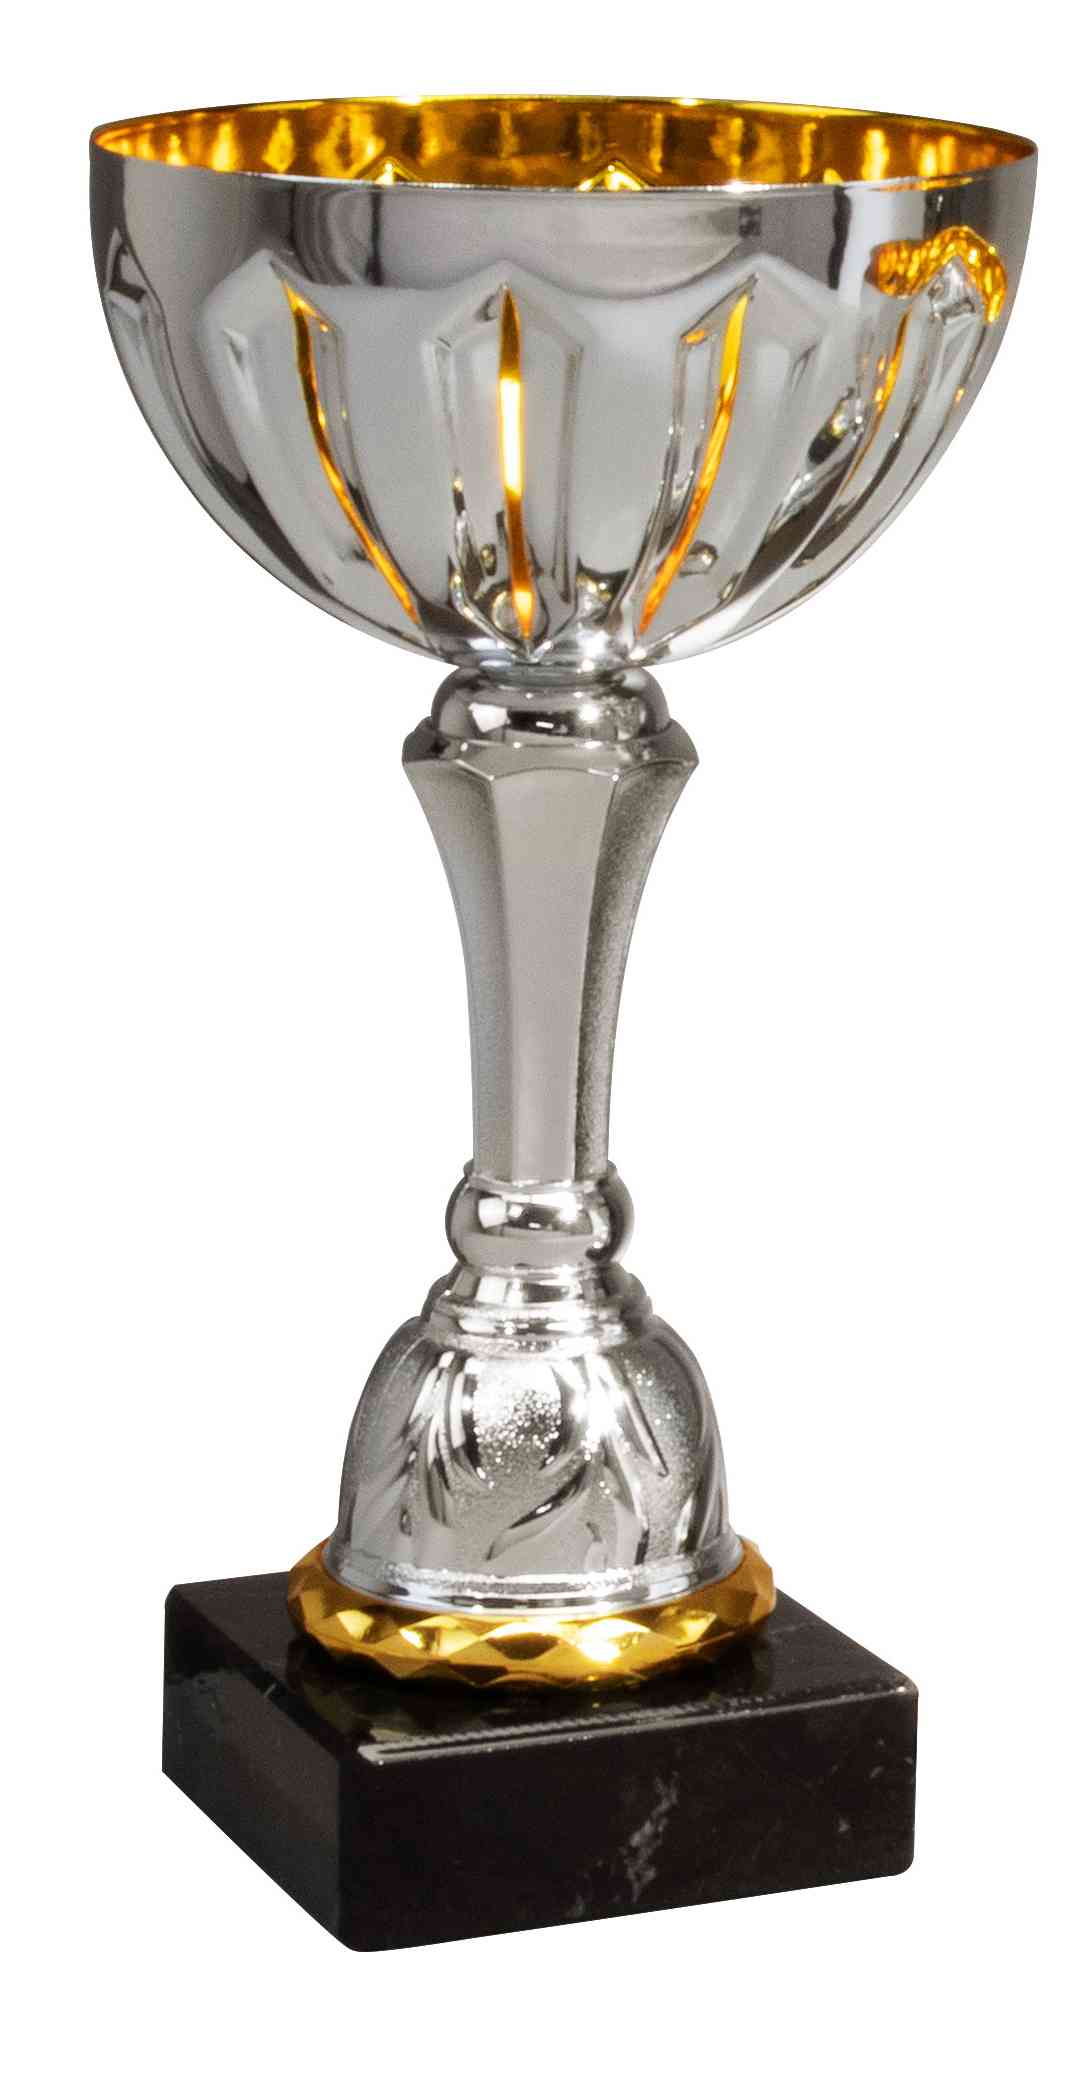 POMEKI Silberner und goldener Pokal aus der Pokale Ratingen 3- er Pokalserie 197 mm - 257 mm PK740440-3 mit exklusivem Design auf einem schwarzen Sockel.